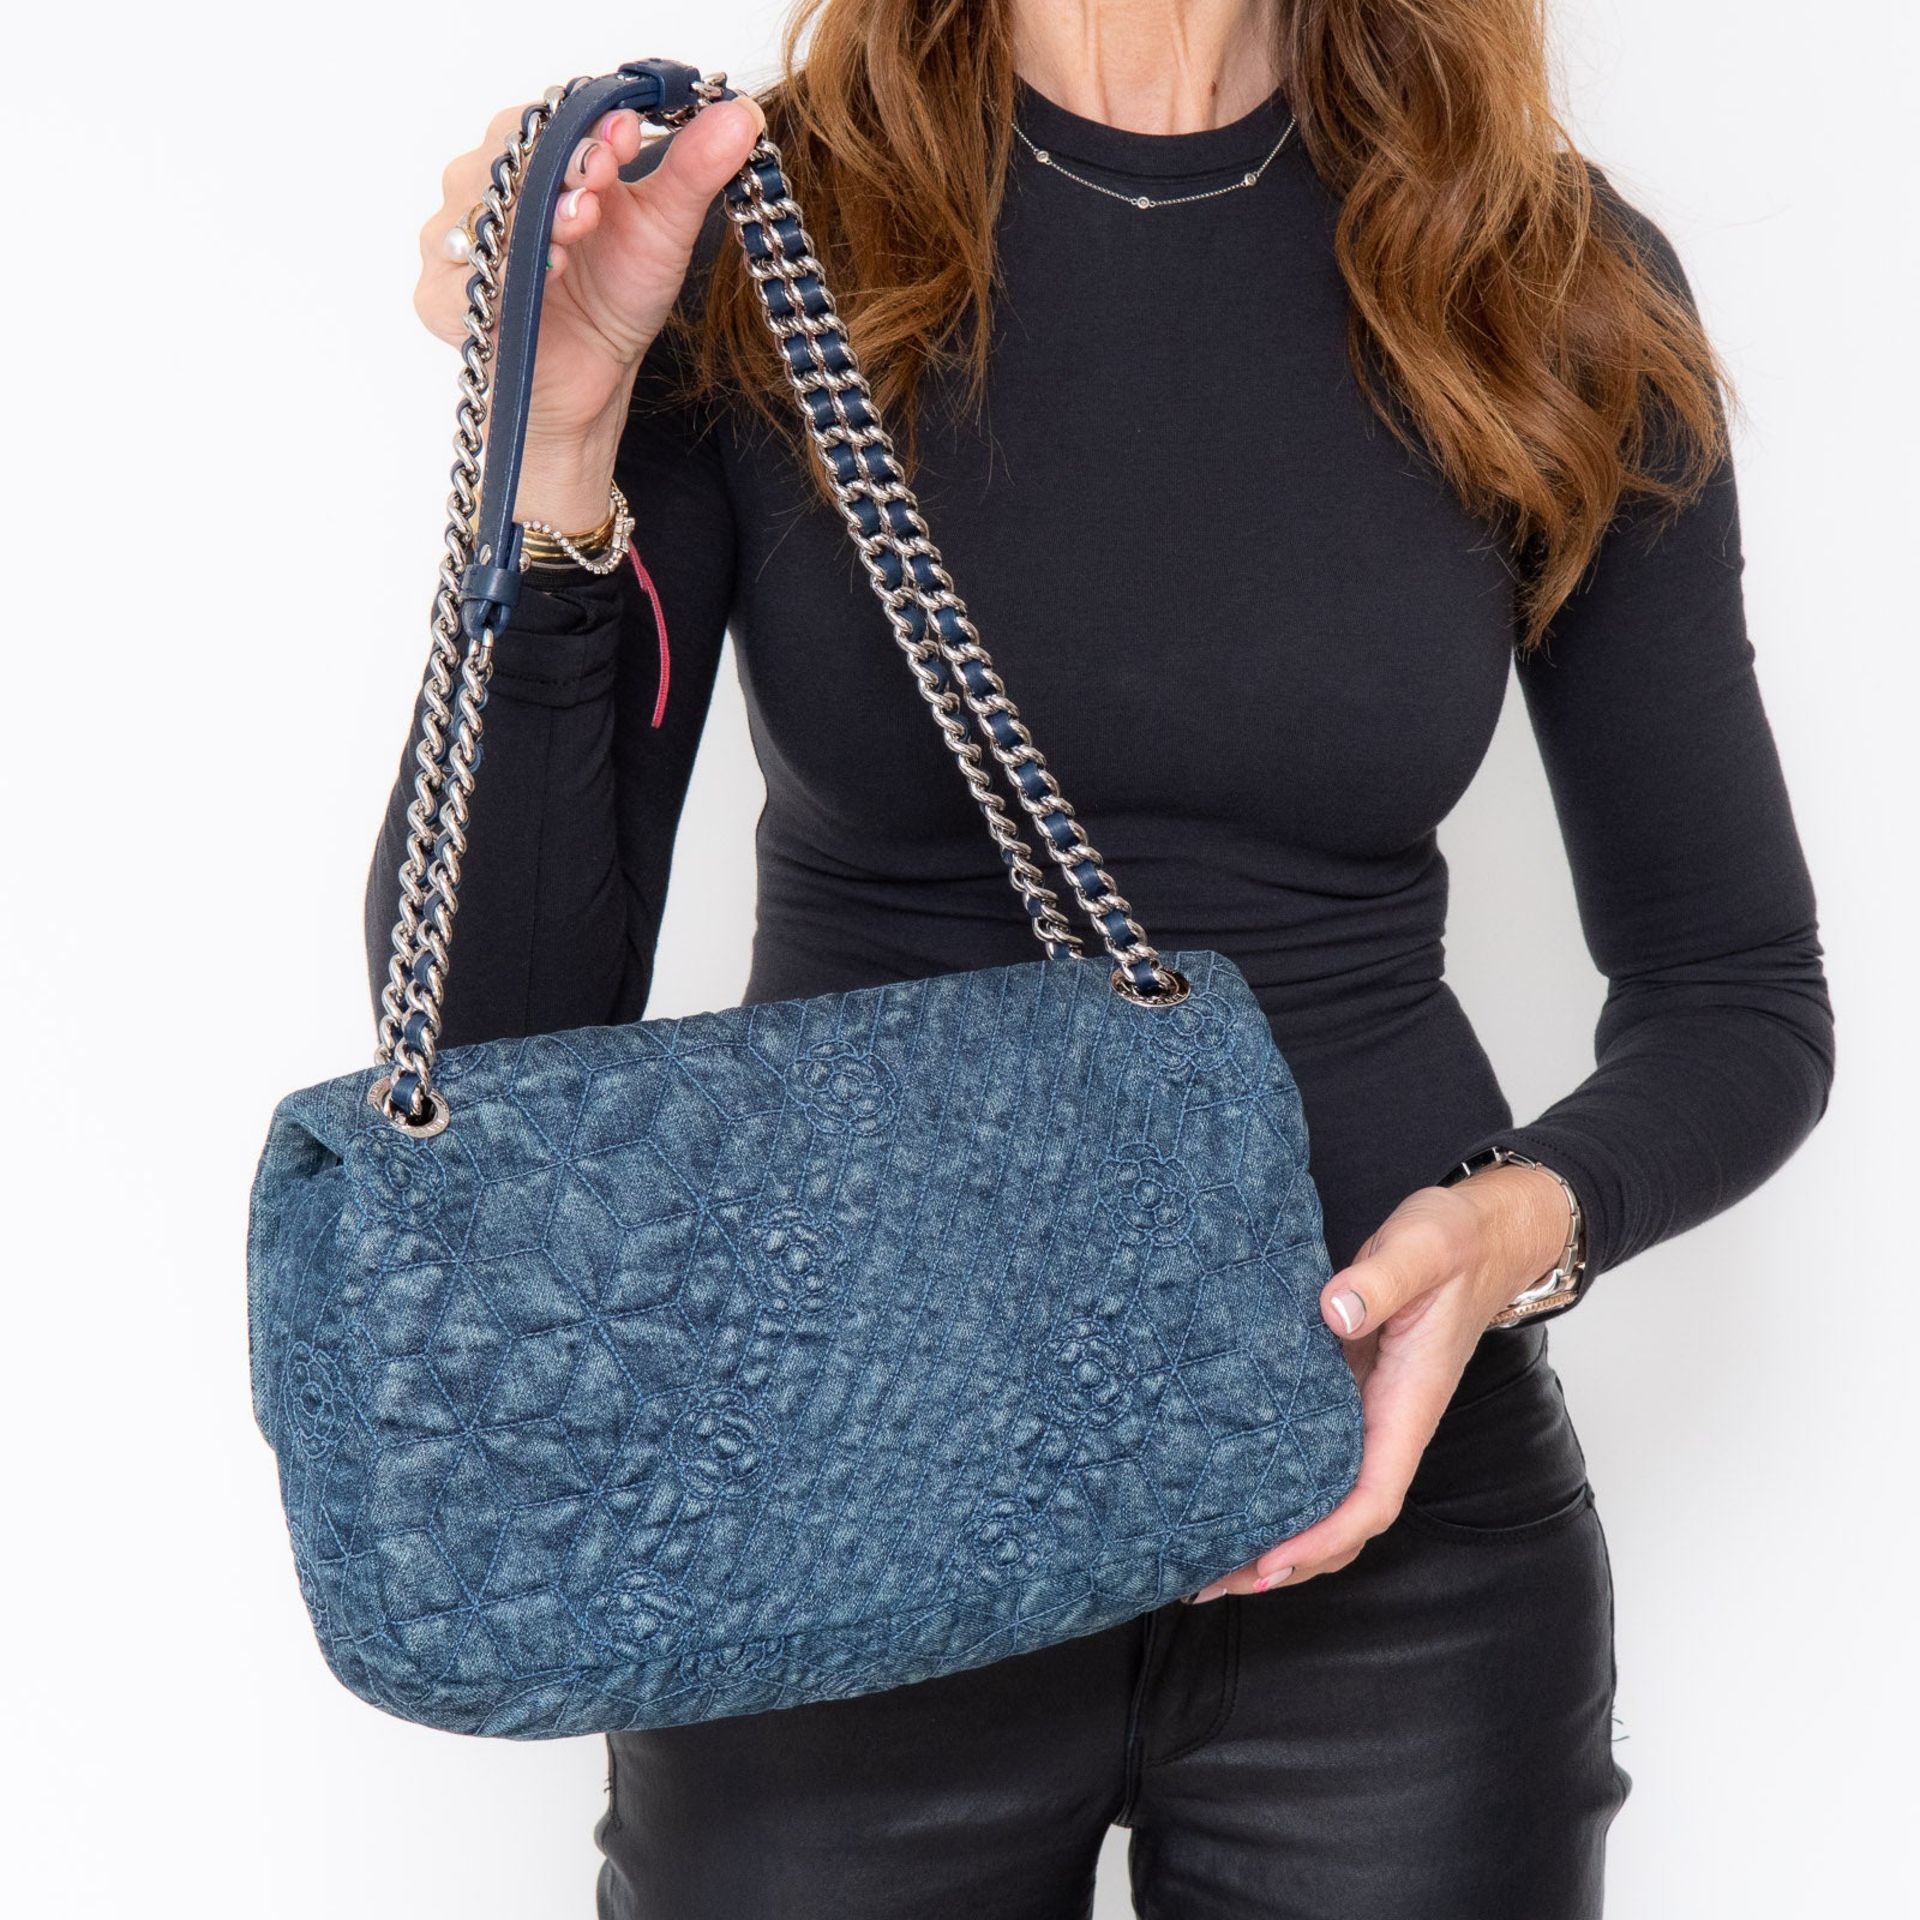 Chanel Denim Blue Camelia Flap Bag - Image 4 of 11